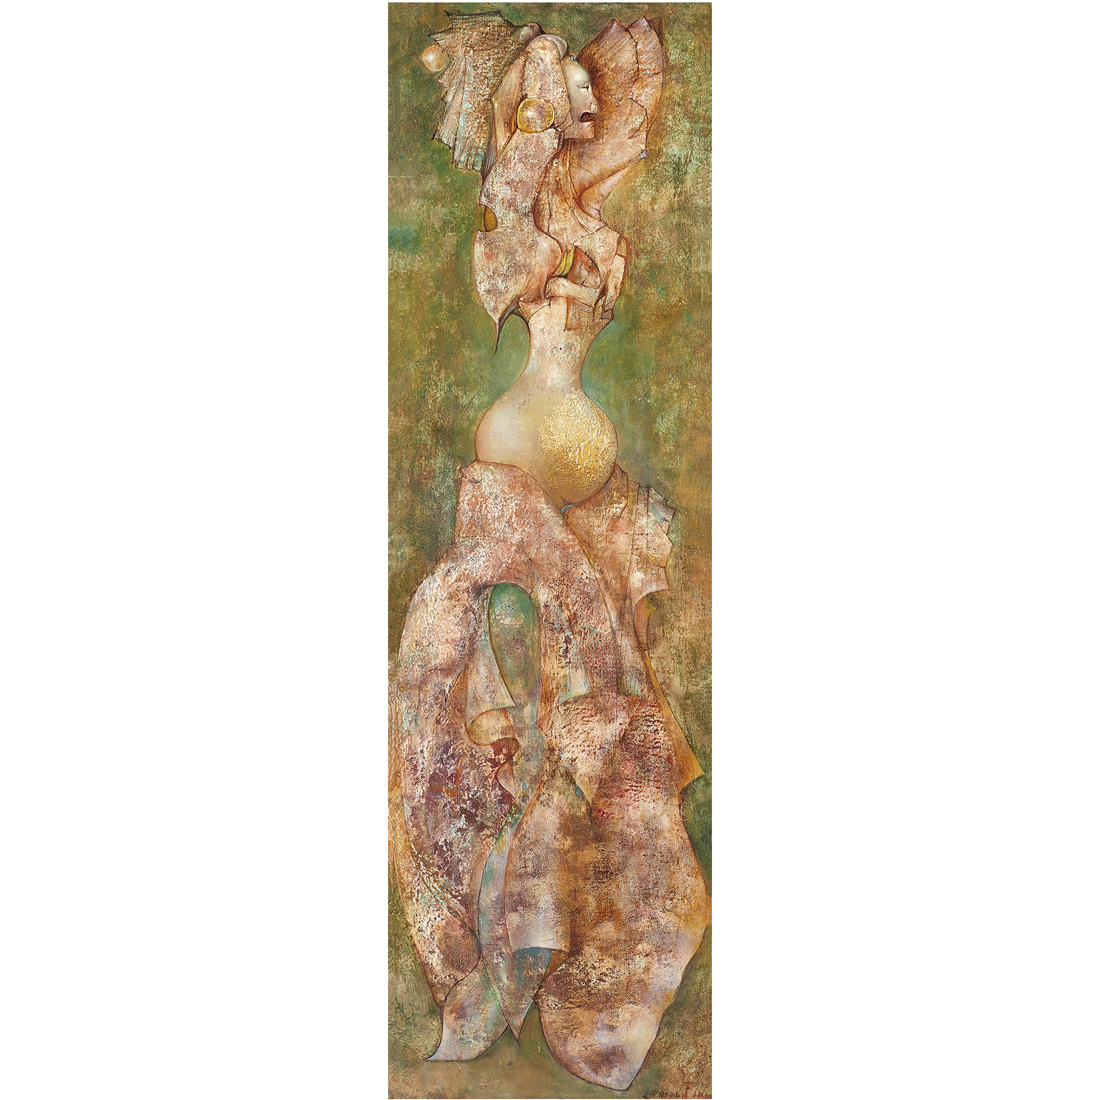 Leonor Fini, ‘Zorniga,’ $187,500. Image courtesy of Clars Auction Gallery